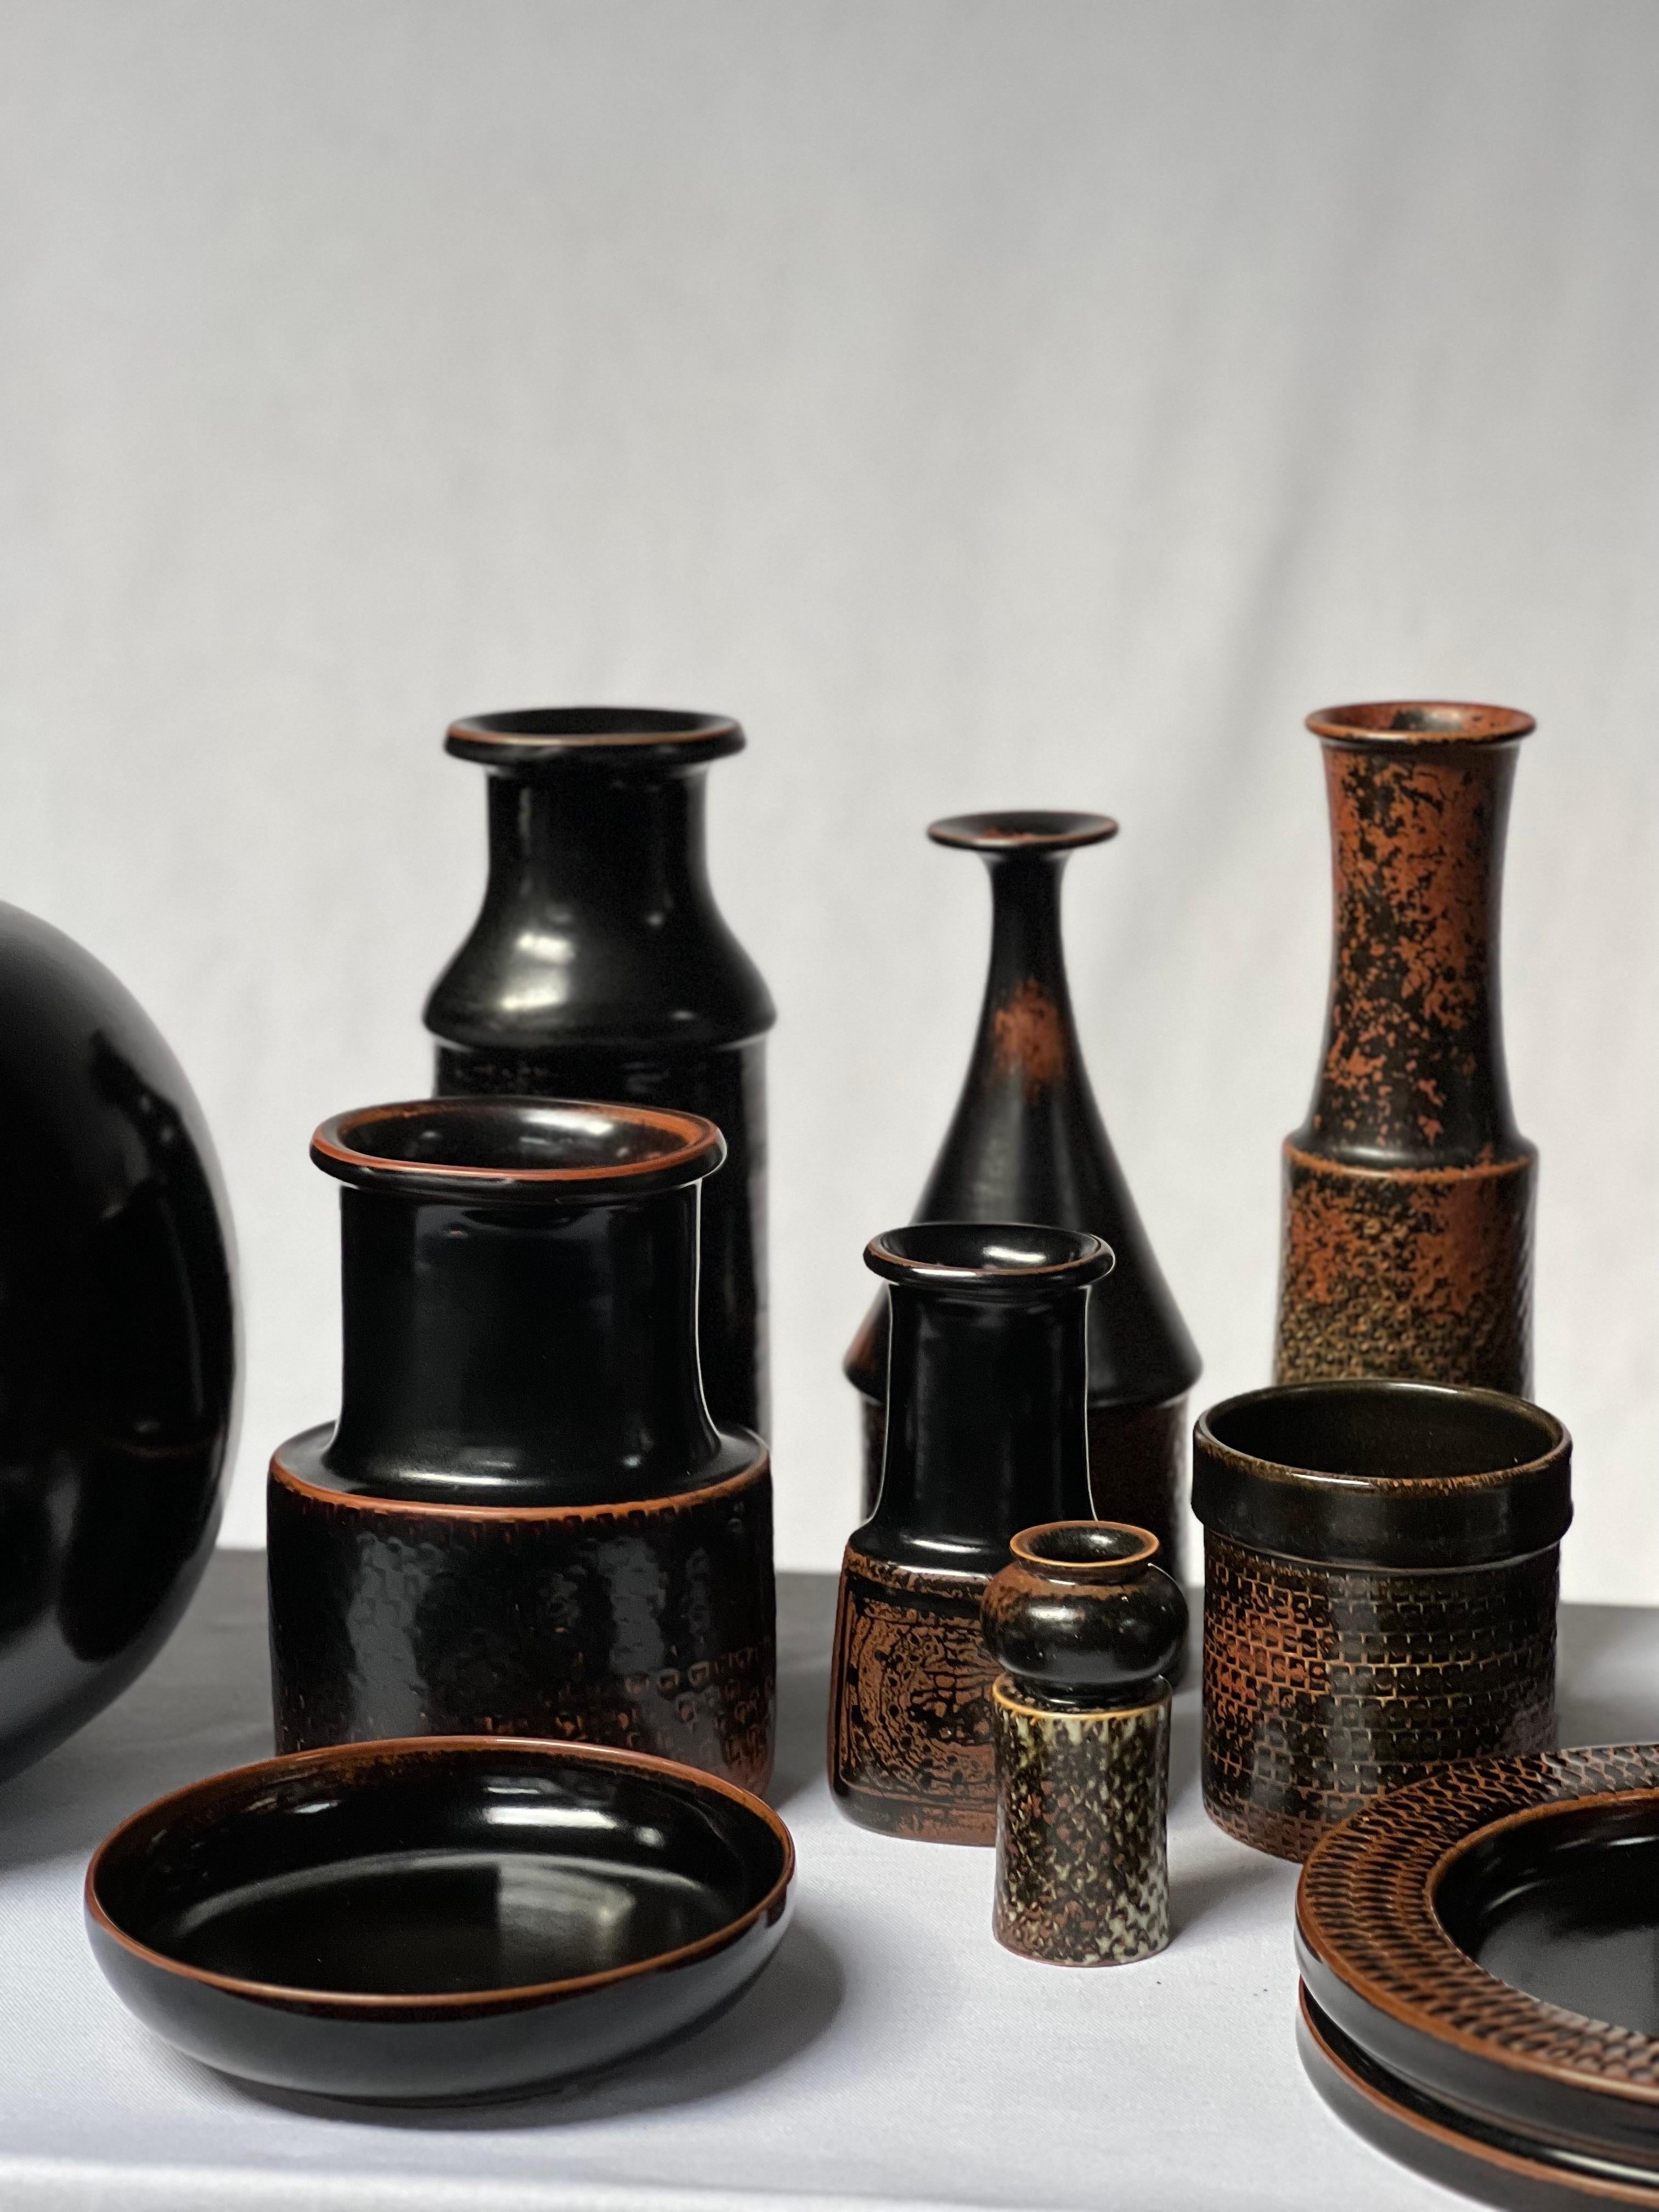 Stig Lindberg Unique Vase in black Glaze Tenmoku Made by Hand Sweden 1969 For Sale 5